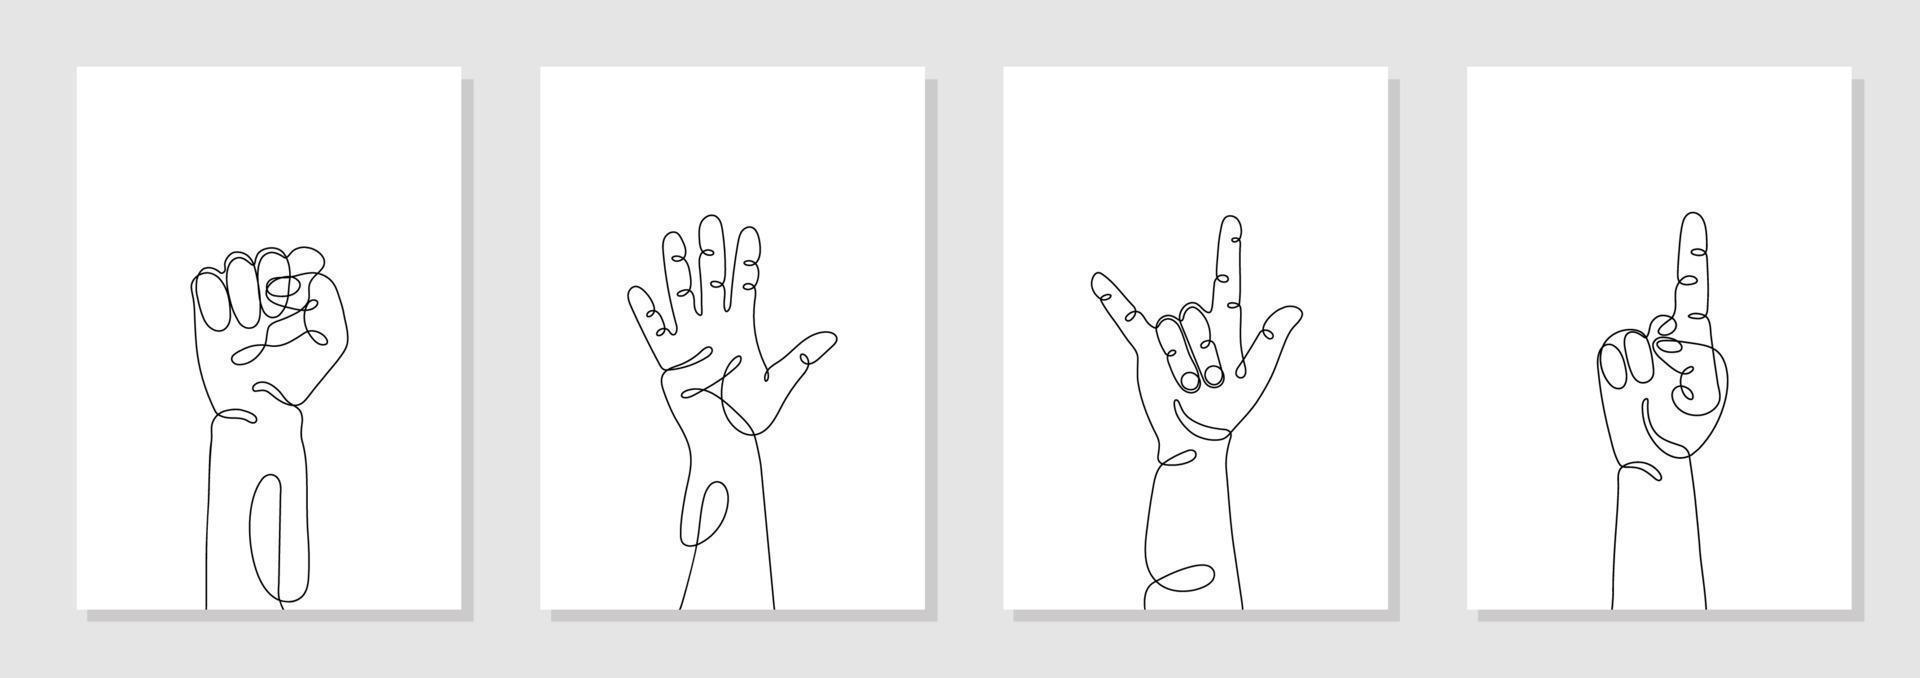 conjunto de gestos de mano dibujados en una sola línea, manos humanas minimalistas con puño, cinco, hola, roca, uno, apuntando. vector gráfico dinámico continuo de una línea